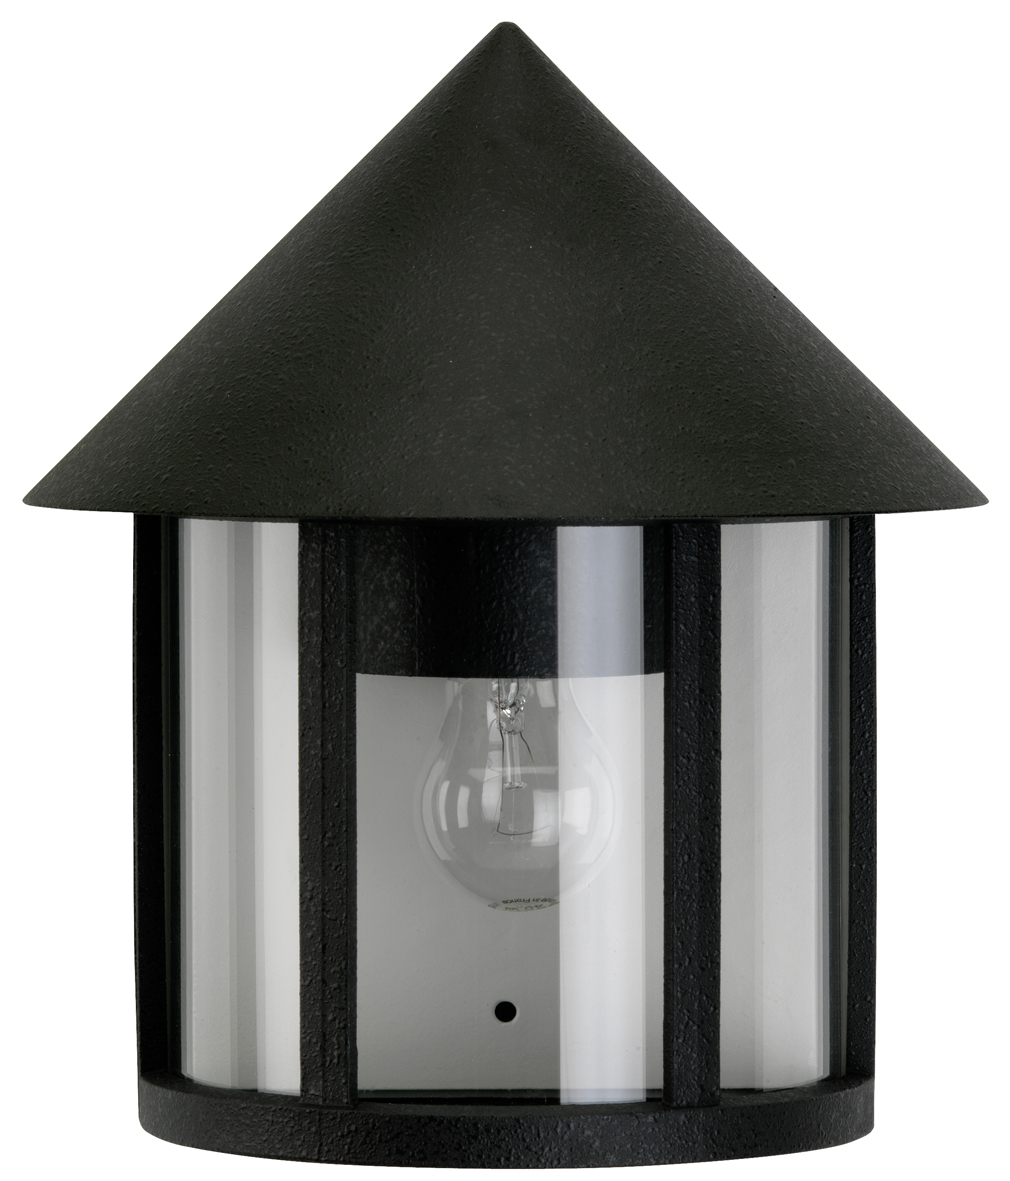 Albert LeuchtenWandleuchte Typ Nr. 3222 - Farbe: schwarz, für 1 x Lampe, E27